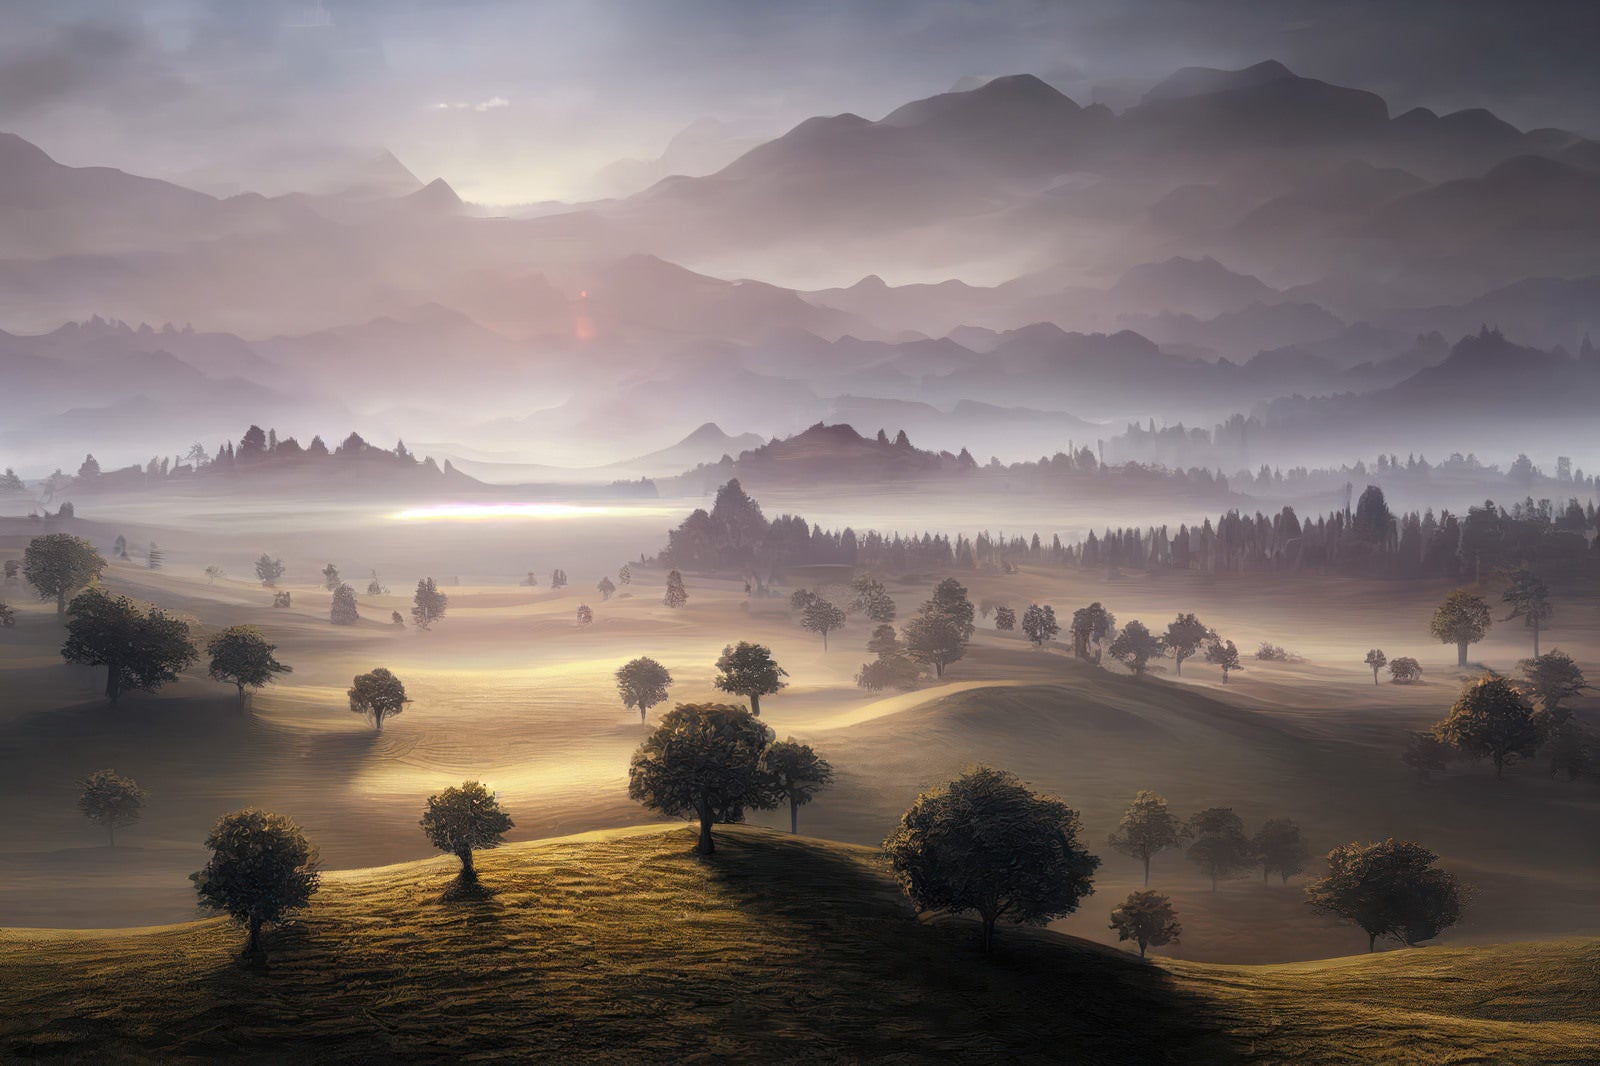 「夜明けの草原と朝靄に包まれた山々」の写真